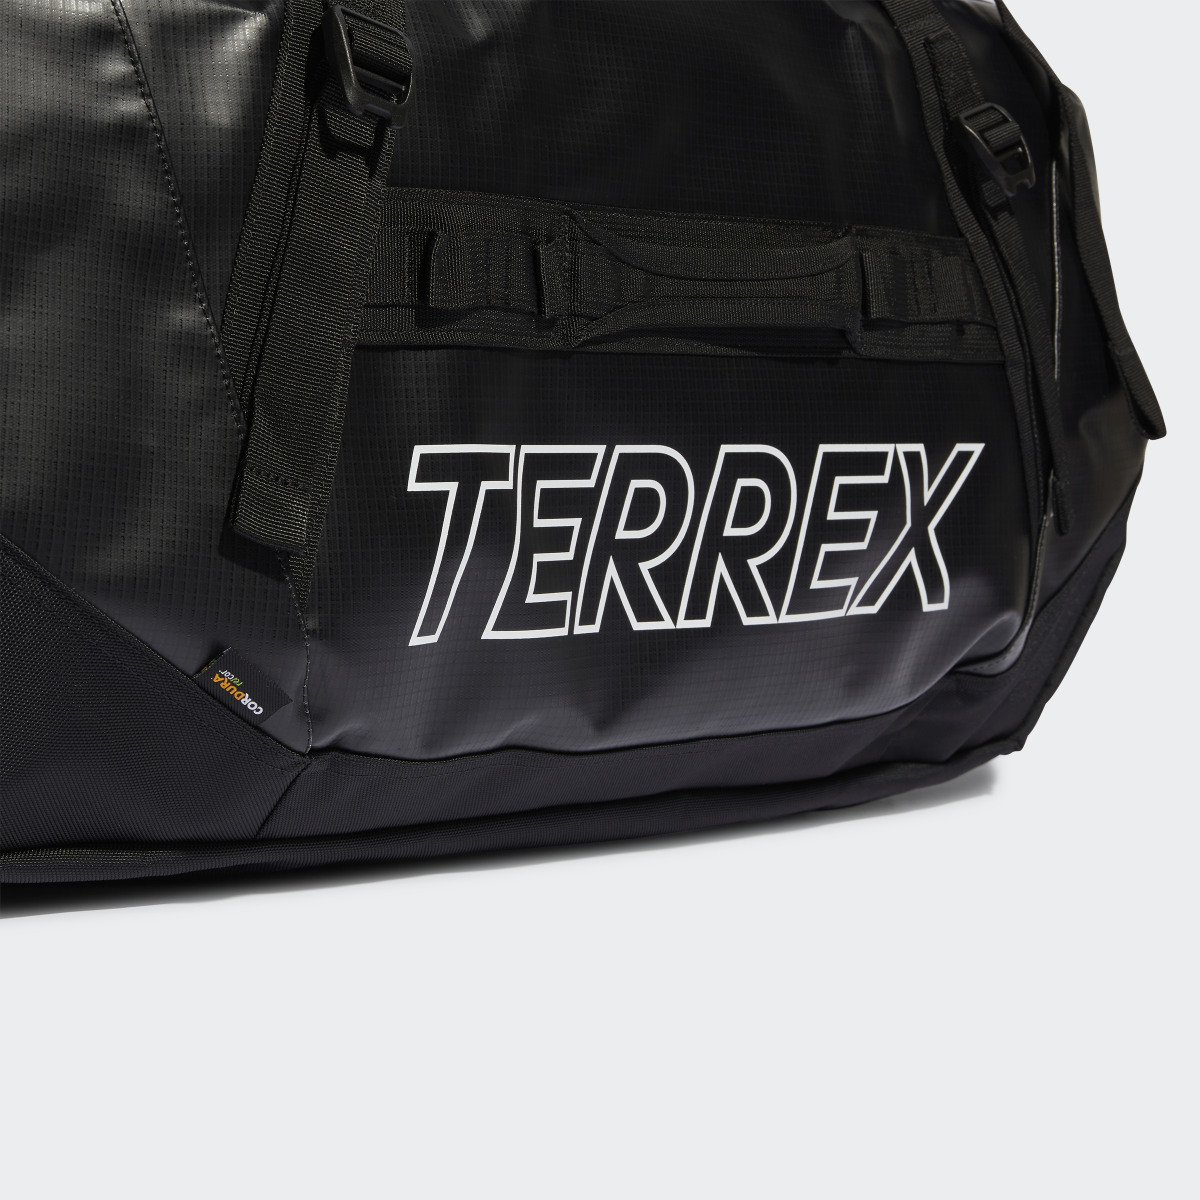 Adidas Terrex RAIN.RDY Expedition Duffel Bag Large - 100L. 6